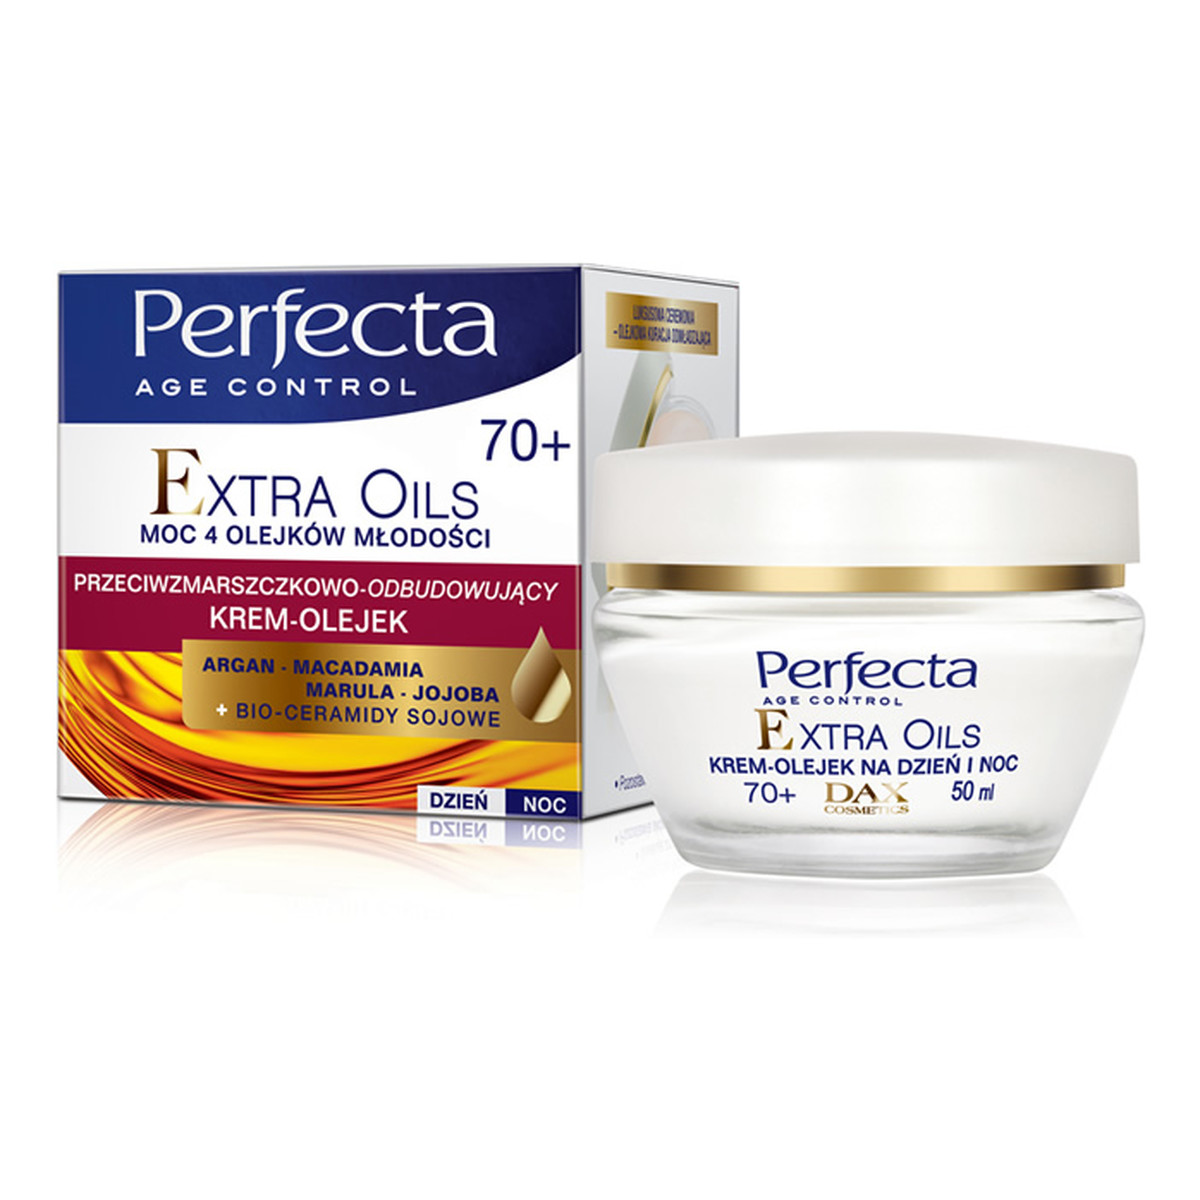 Perfecta Age Control Extra Oils 70+ Krem-Olejek Przeciwzmarszczkowo-Odbudowujący Na Dzień i Noc 50ml